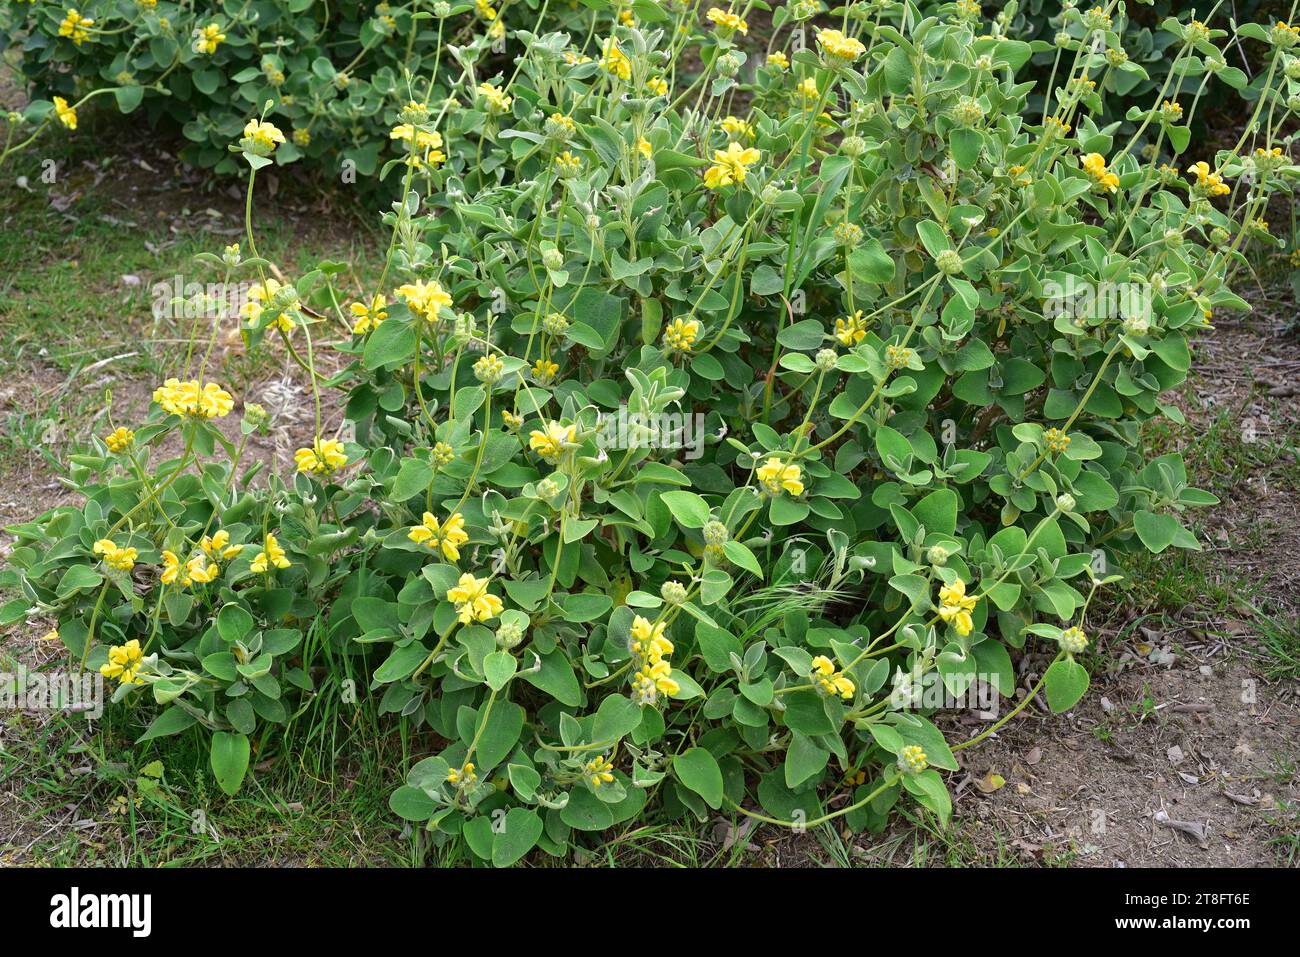 La sauge de Jérusalem à feuilles dorées (Phlomis chrysophylla) est un arbuste à feuilles persistantes originaire du sud-ouest de l'Asie. Plante à fleurs. Banque D'Images